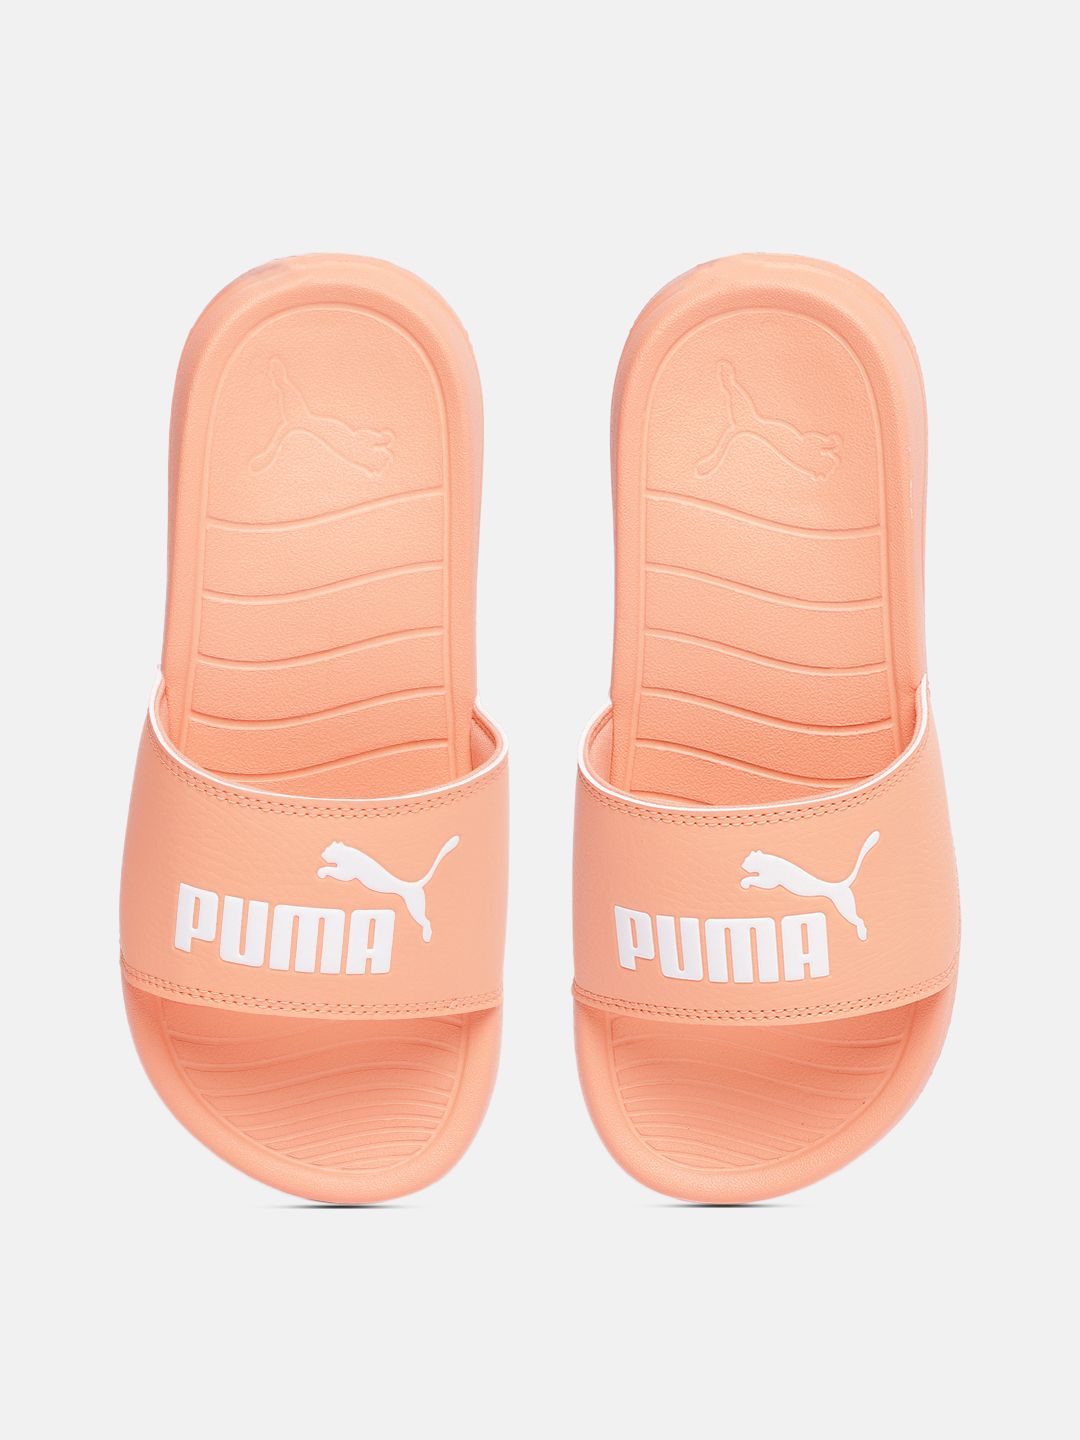 Puma Unisex Peach-Coloured Popcat 20 Sliders Price in India